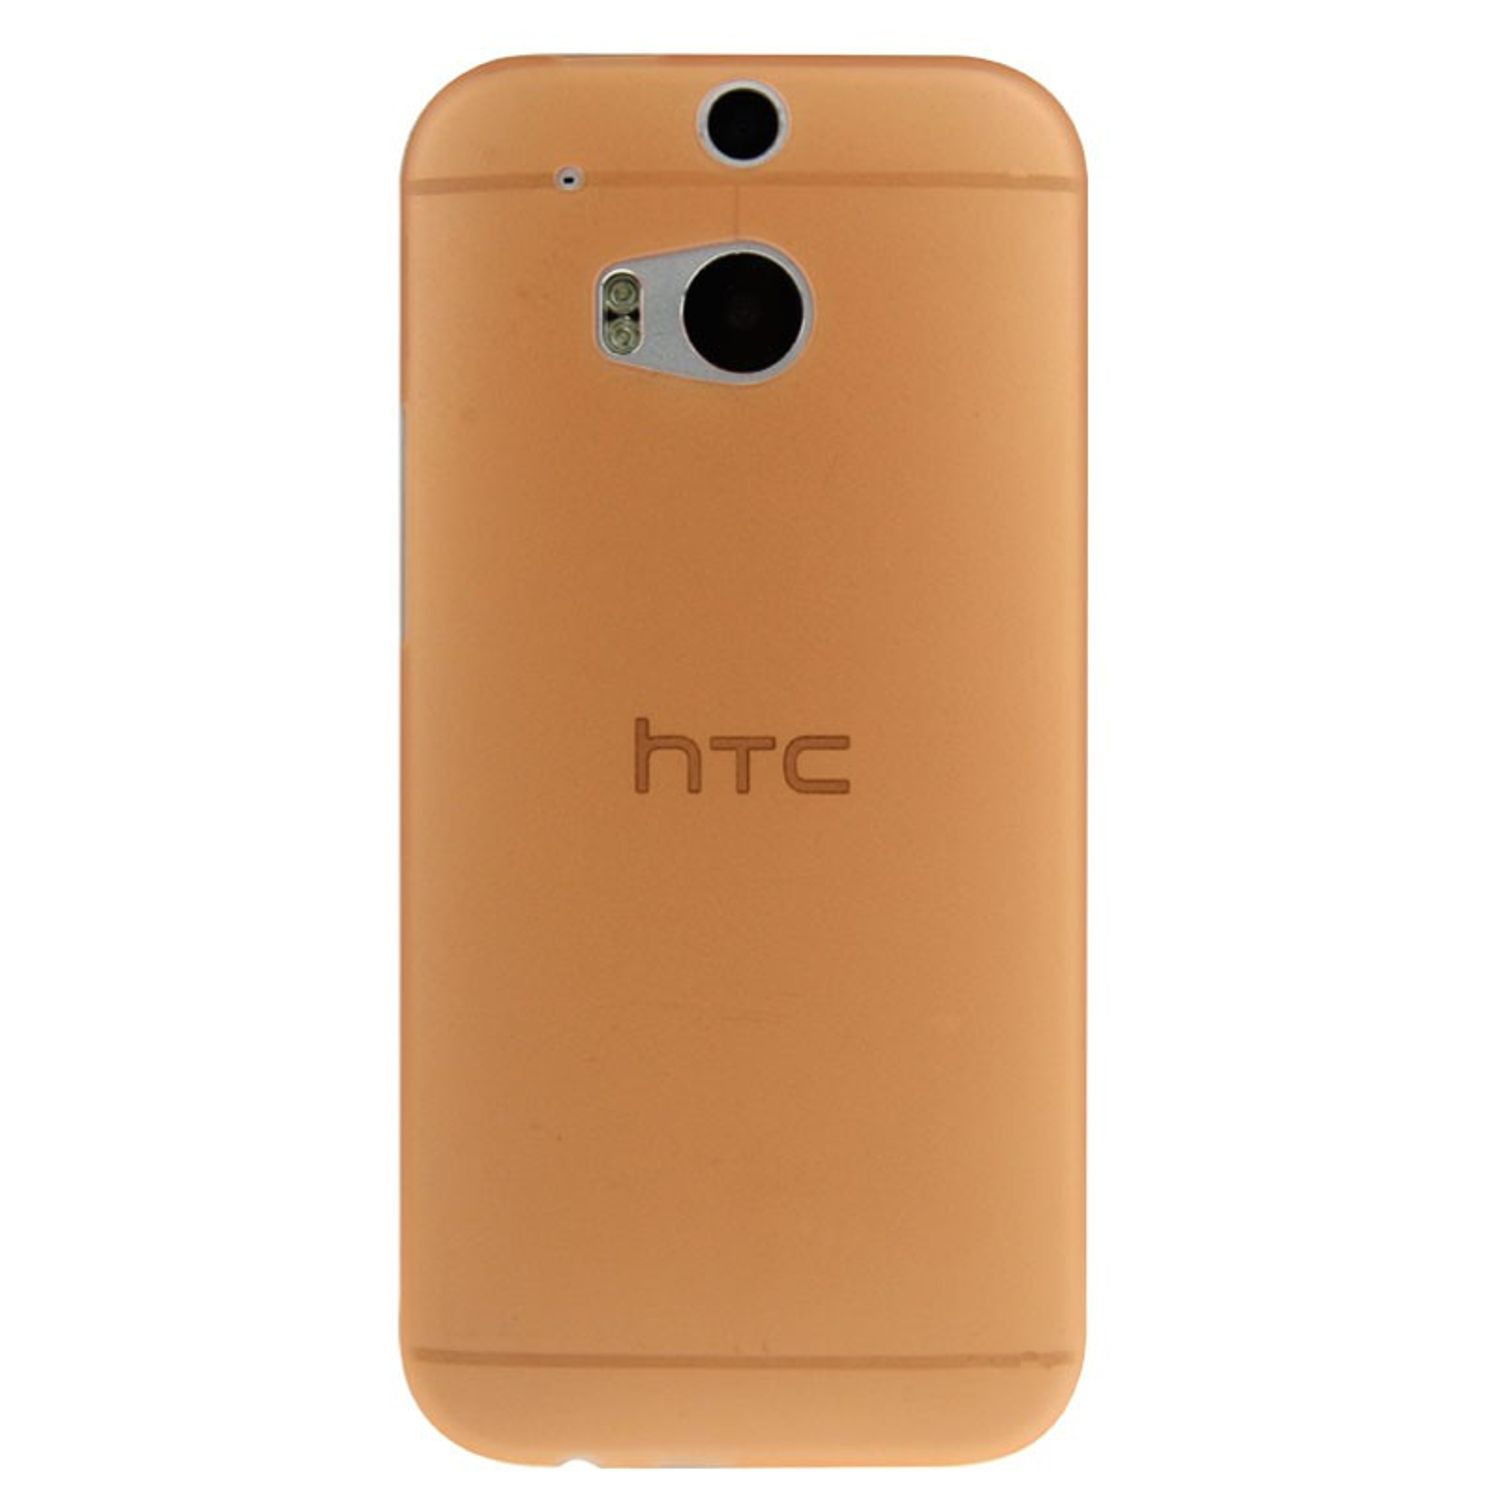 KÖNIG DESIGN One Orange HTC, Backcover, Handyhülle, M8